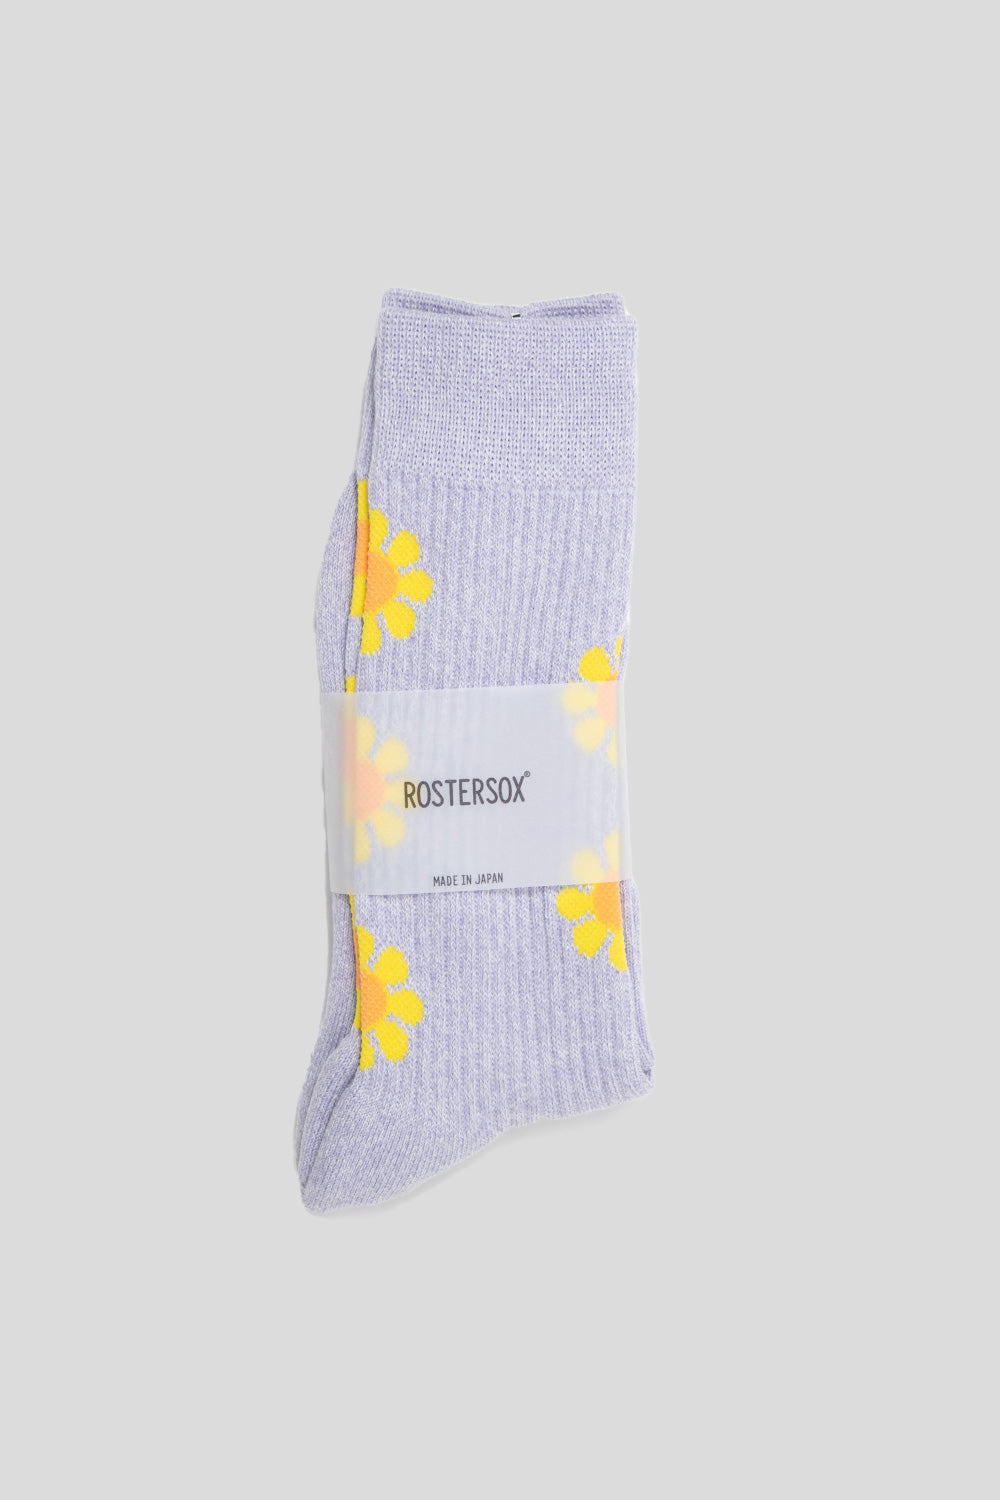 Rostersox Peace Socks in Purple